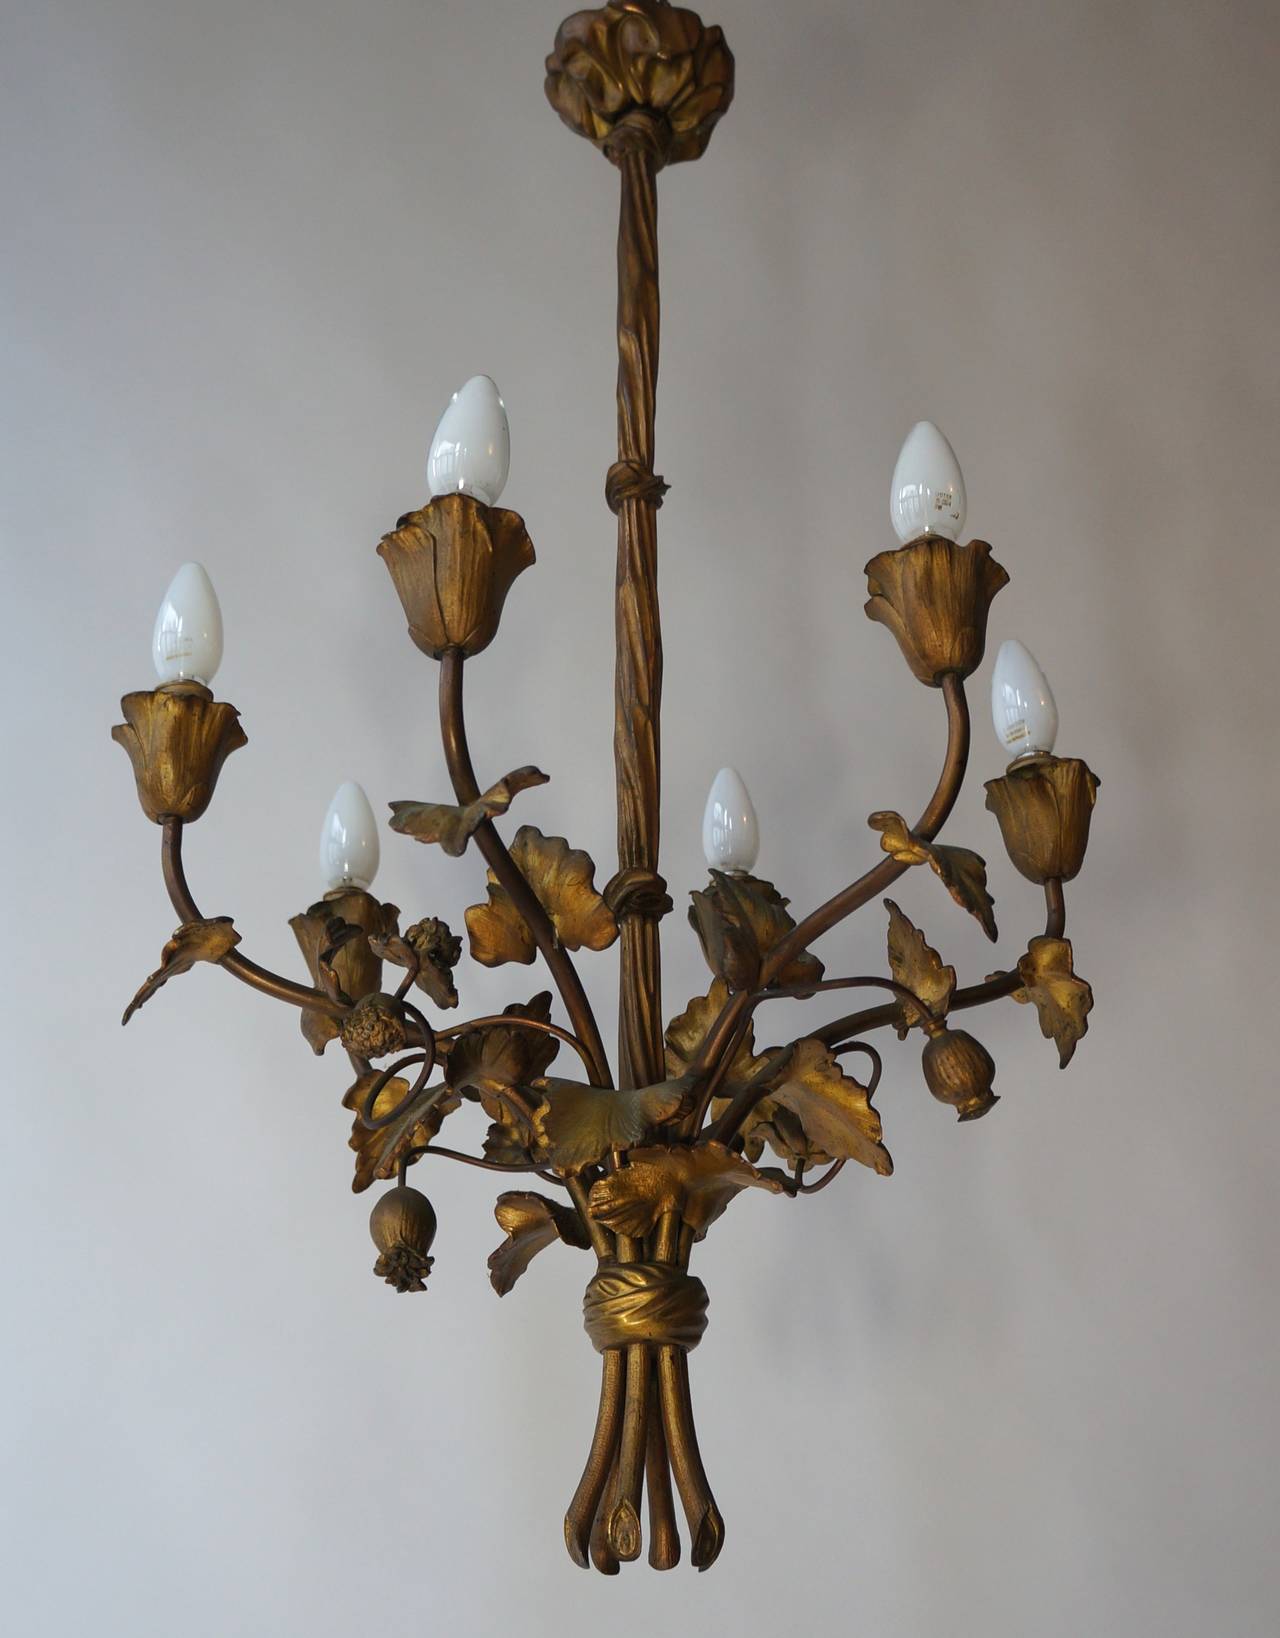 Bronze French chandelier.
Measures: Diameter 50 cm.
Height 90 cm.